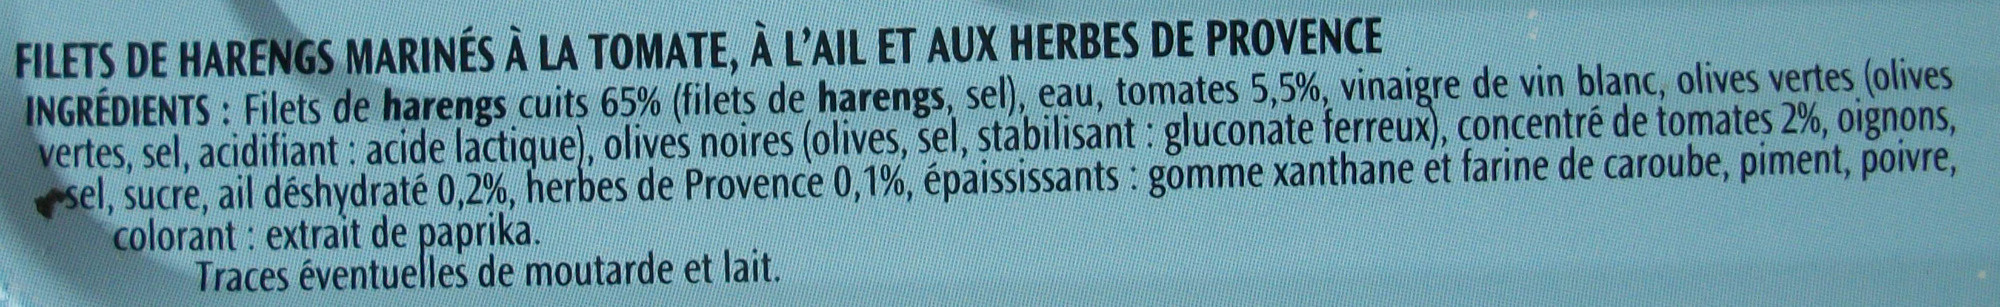 Filets de harengs (Tomate, Ail et Herbes de Provence, Sans Huile) - Ingrédients